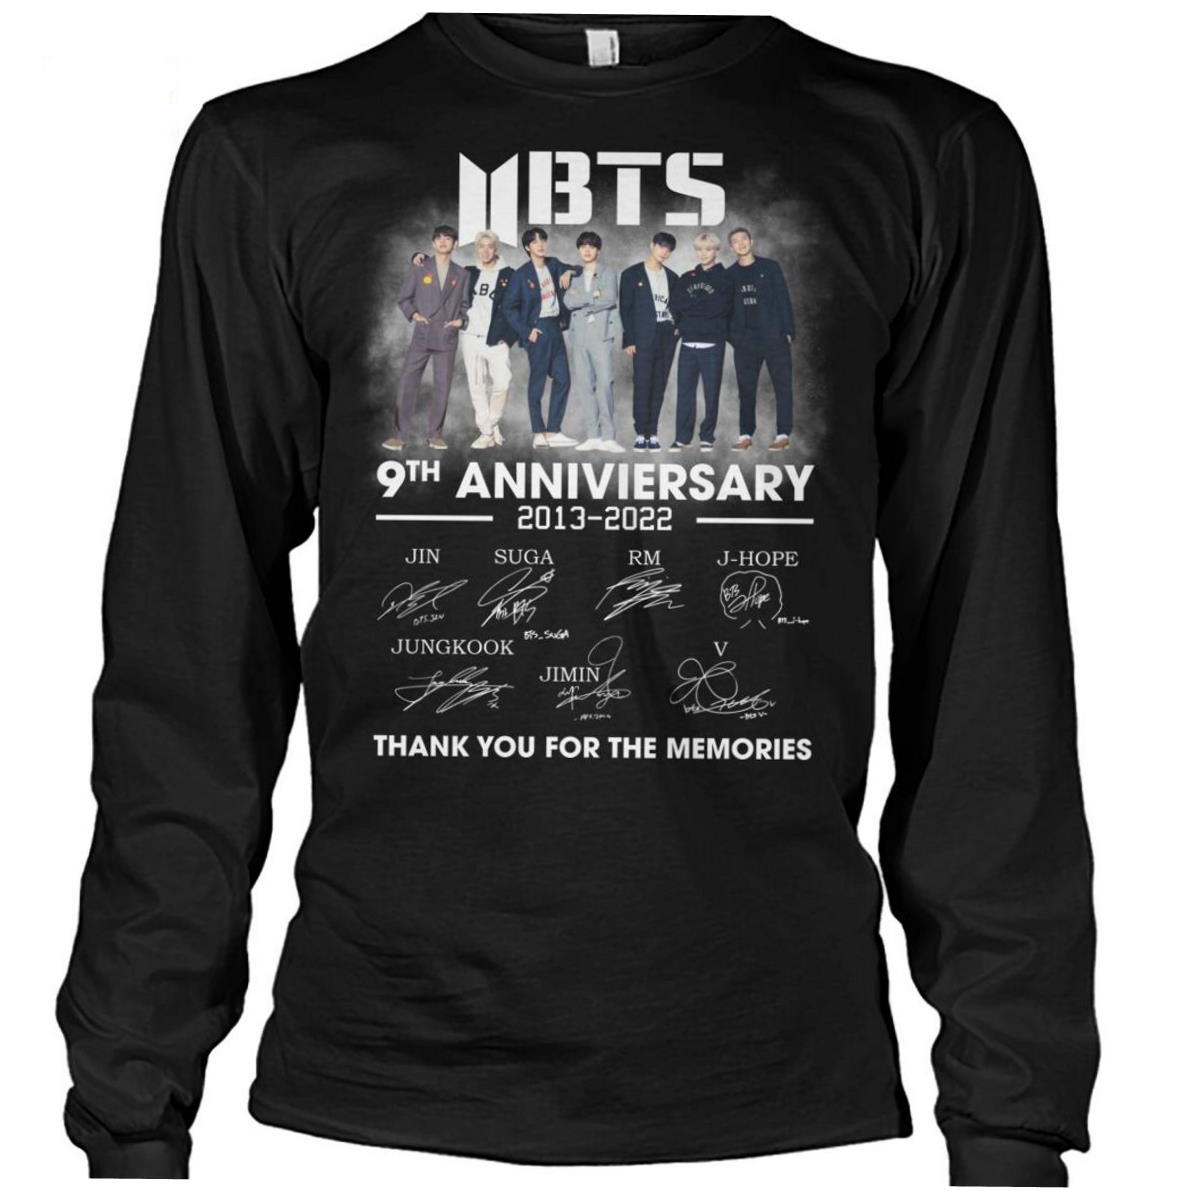 NEW BTS 9 Anniversary 2013-2022 Shirt